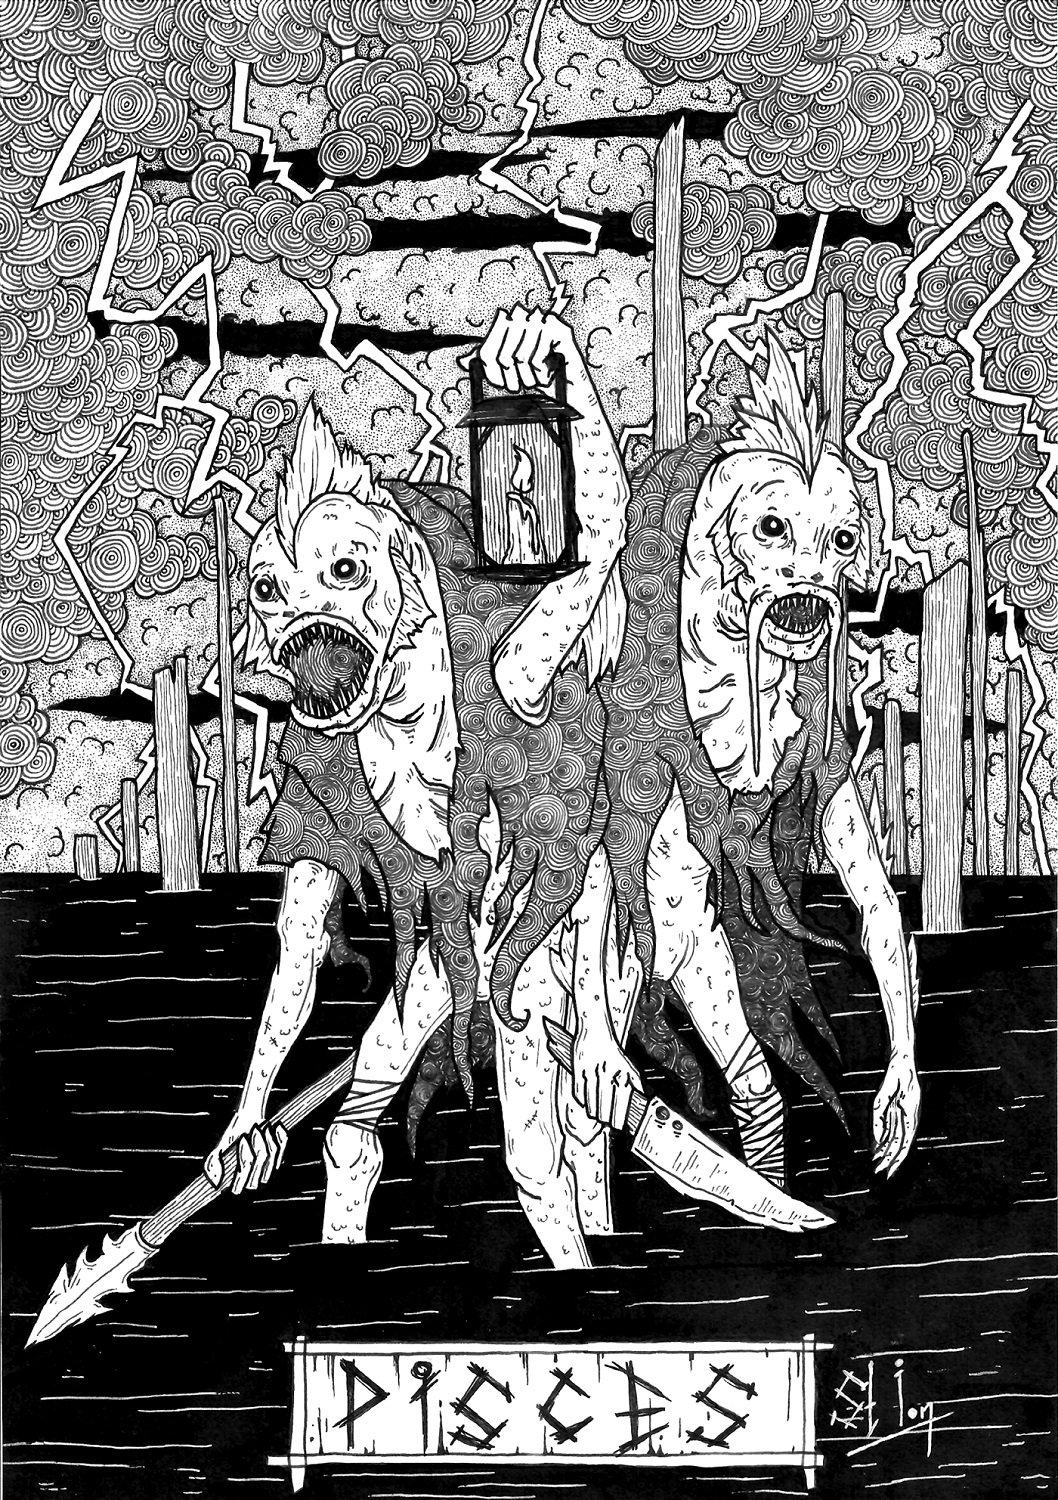 степан ионов st.ion st ion художник графика хтонические боги древние божества лавкрафта отвратительные мужики disgusting men